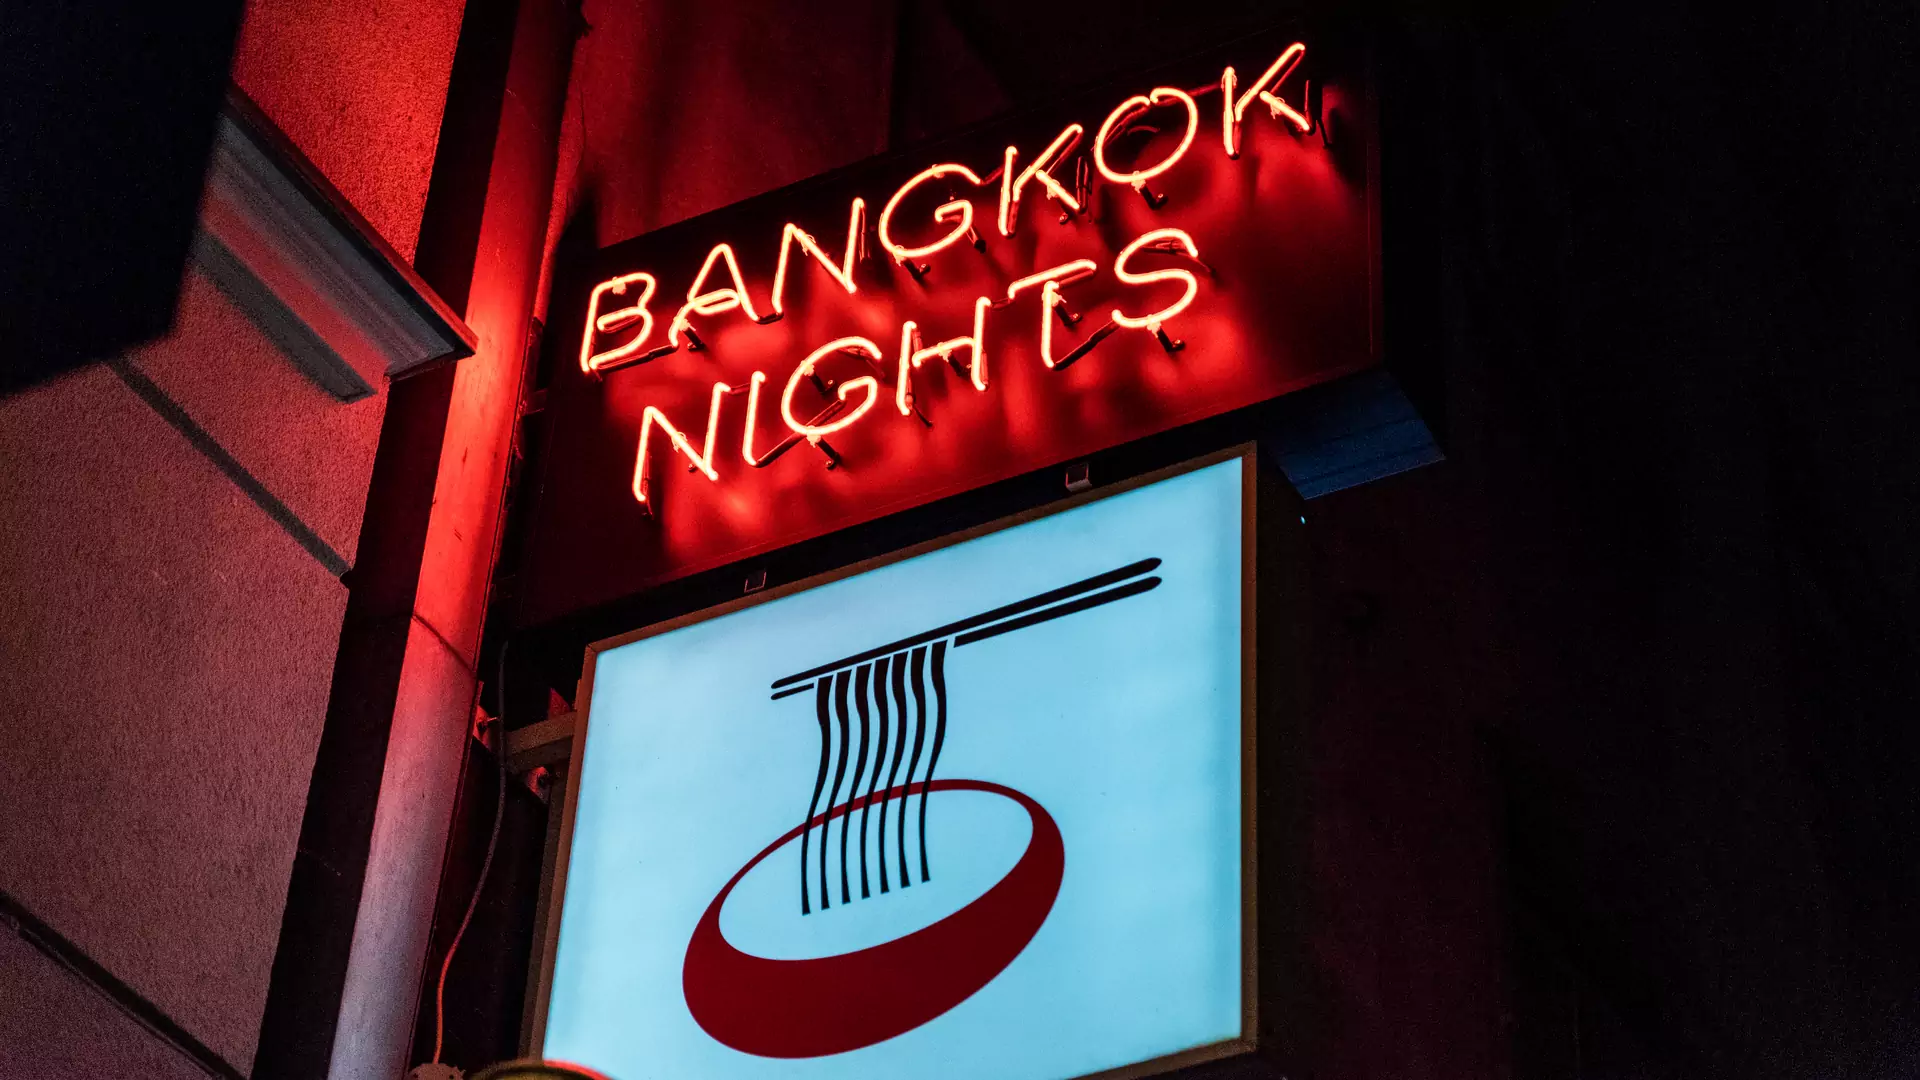 Polskie Bangkok Nights - niespełnione obietnice o imprezie jak z centrum Bangkoku